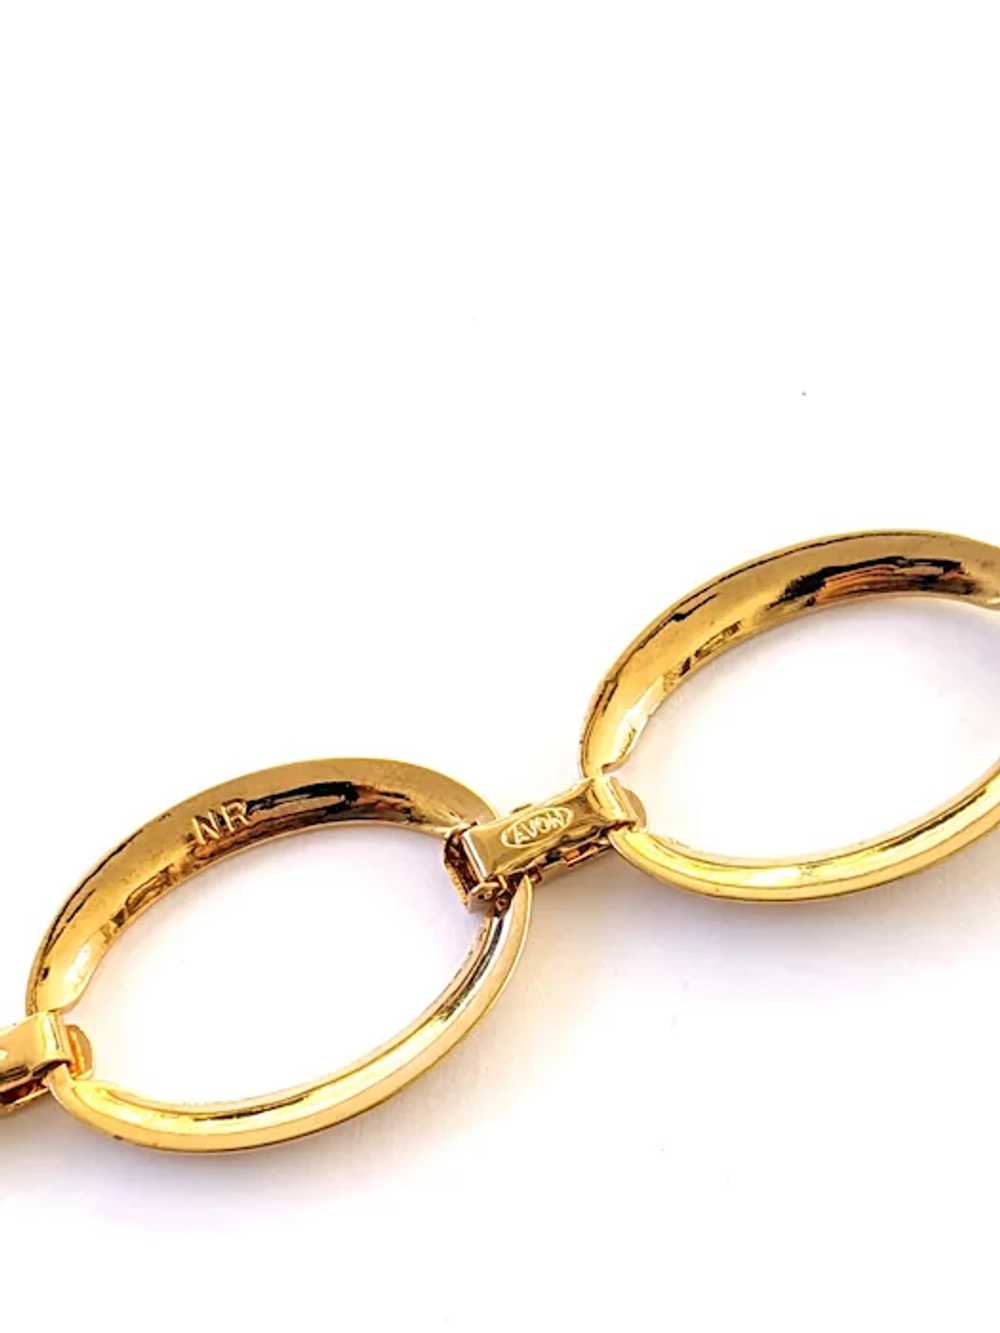 Avon Nina Ricci Gold Tone Rhinestone Bracelet And… - image 7